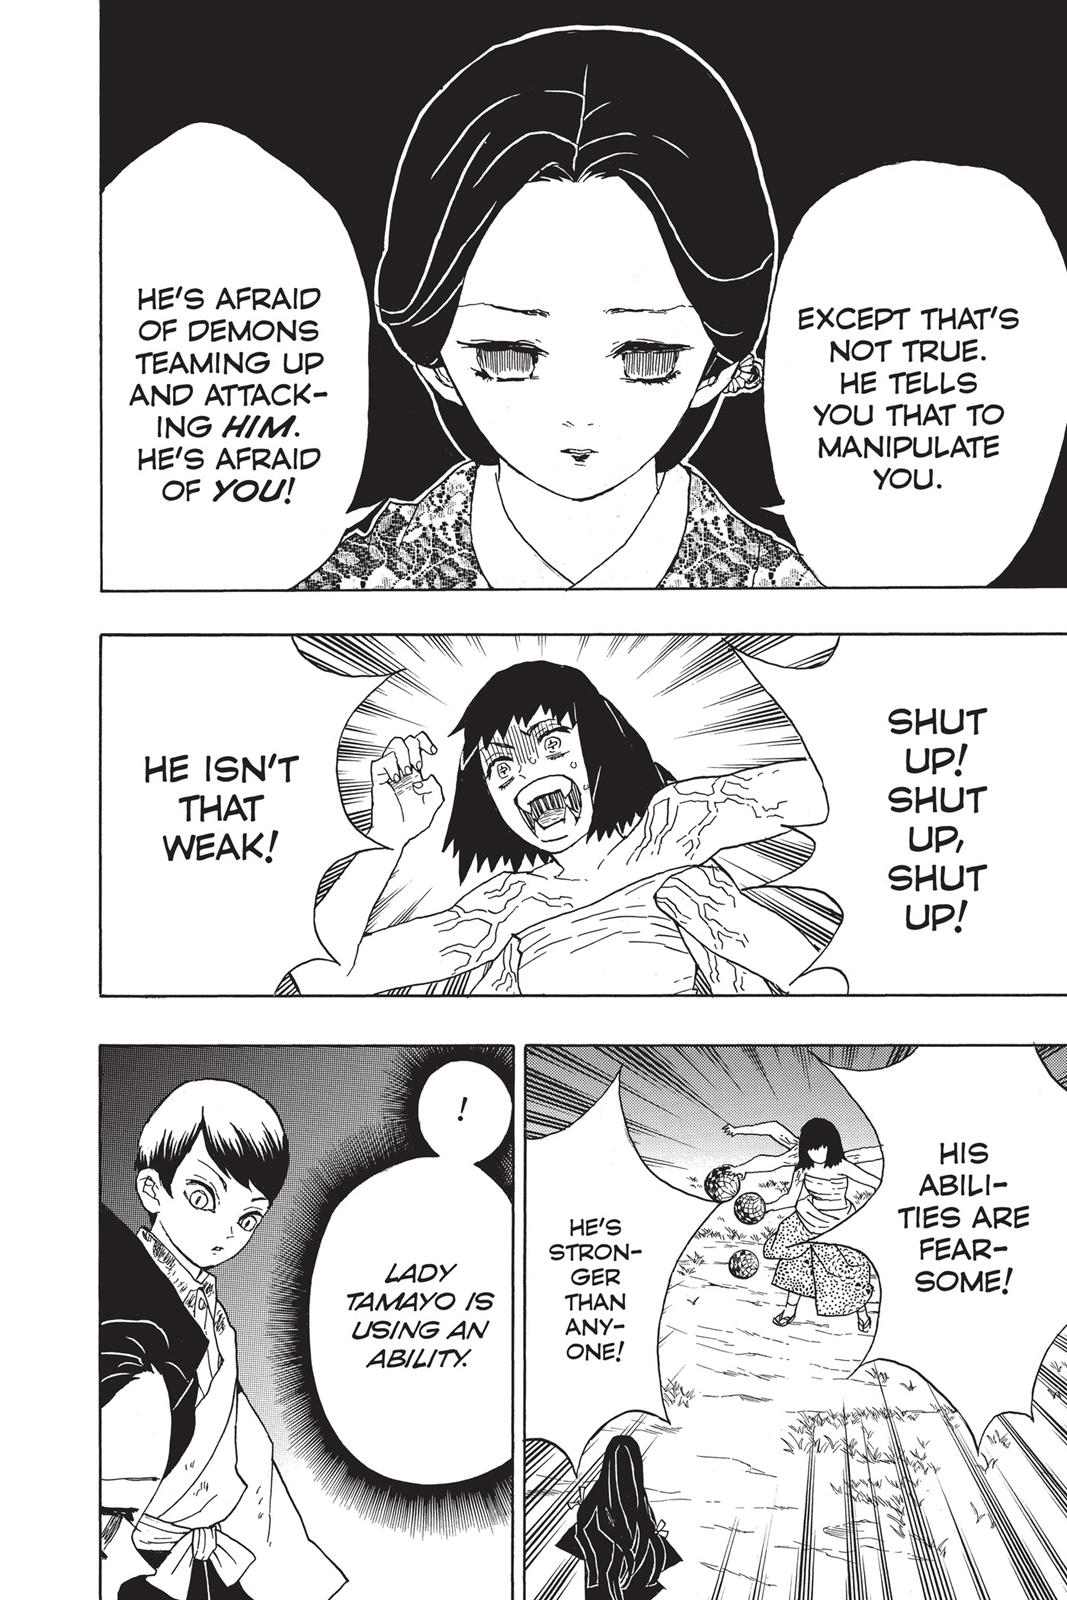 Demon Slayer Manga Manga Chapter - 18 - image 10